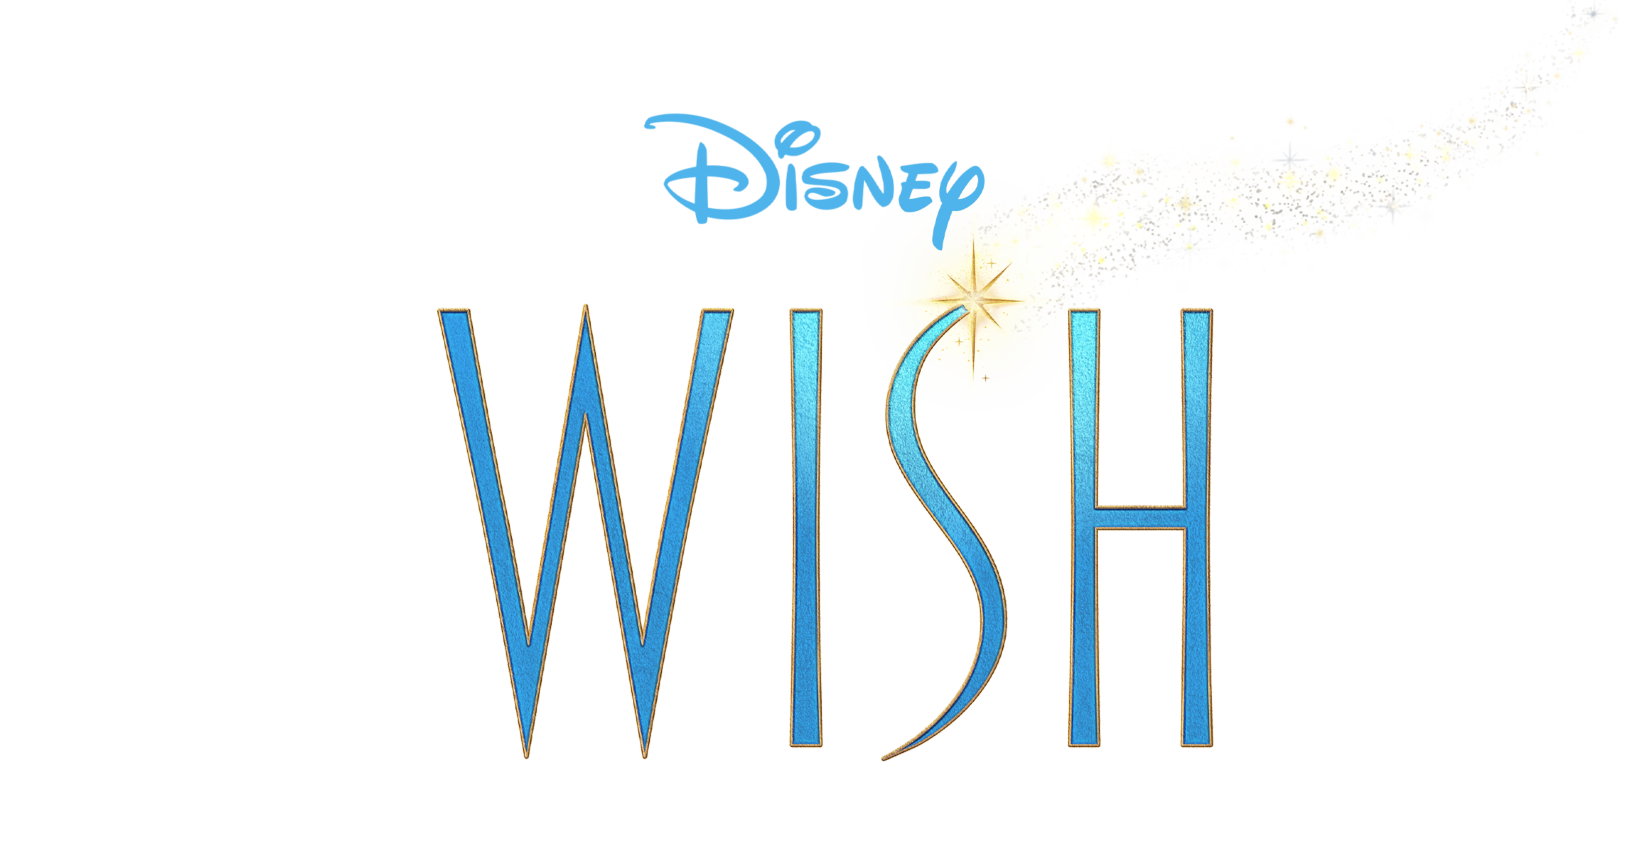 Wish, Disney Wiki